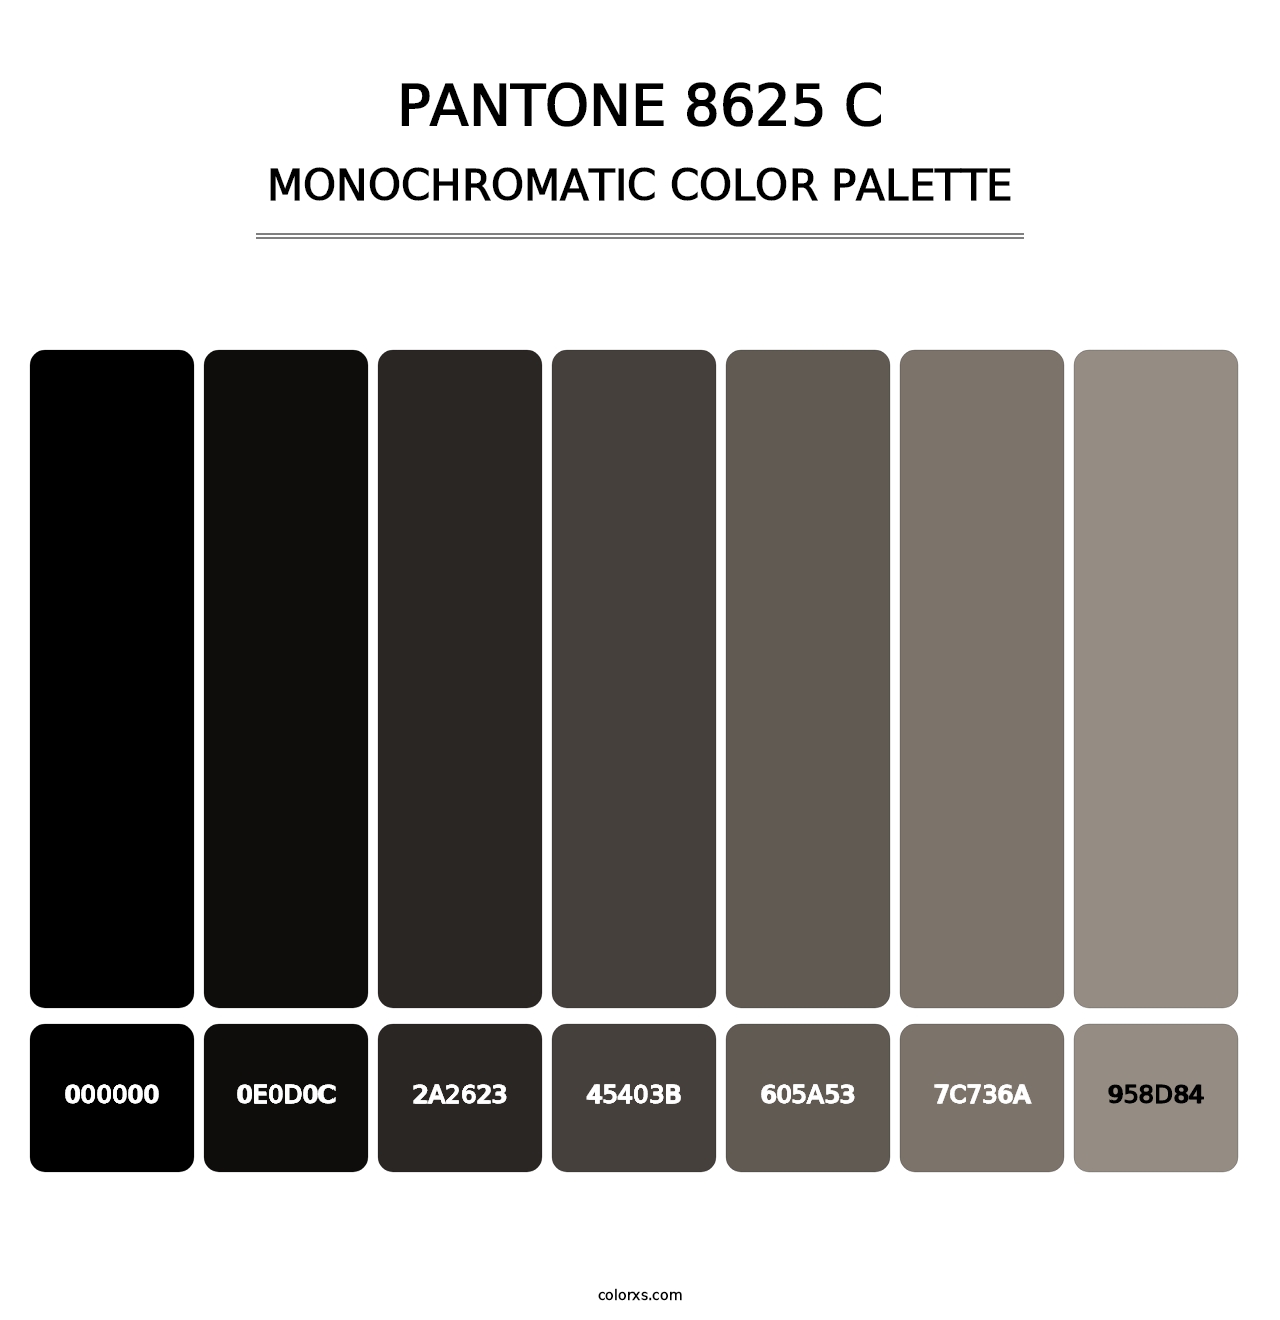 PANTONE 8625 C - Monochromatic Color Palette